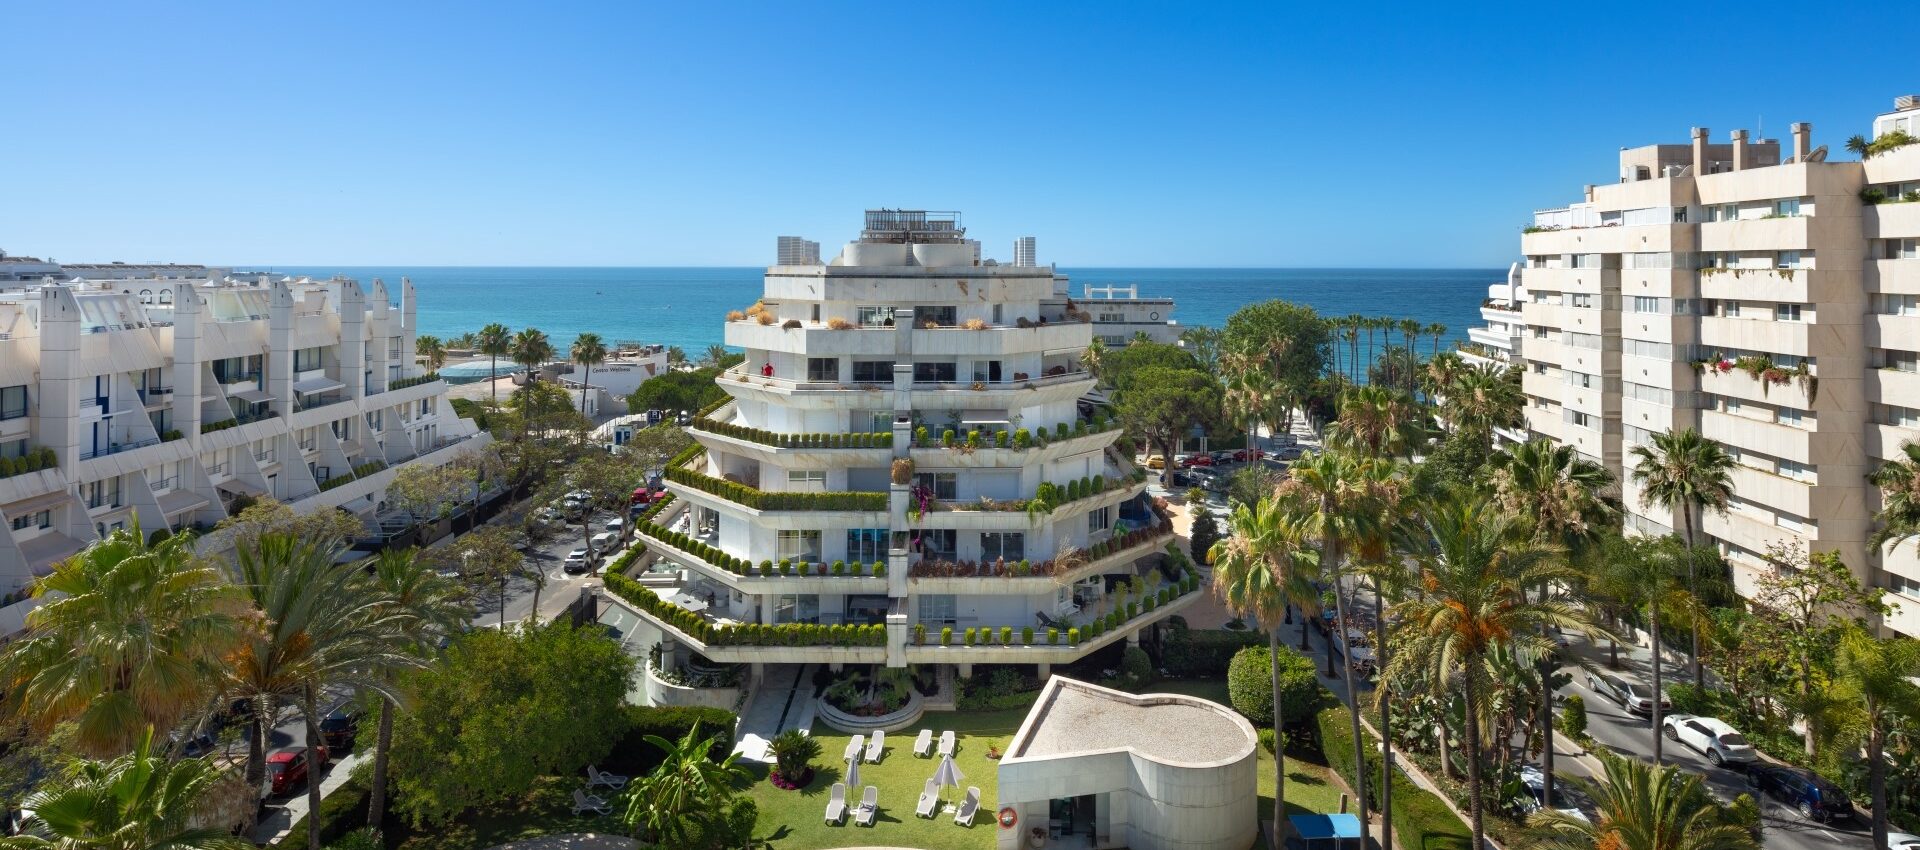 Wunderschönes Duplex-Penthouse im Zentrum von Marbella mit Panoramablick auf das Mittelmeer